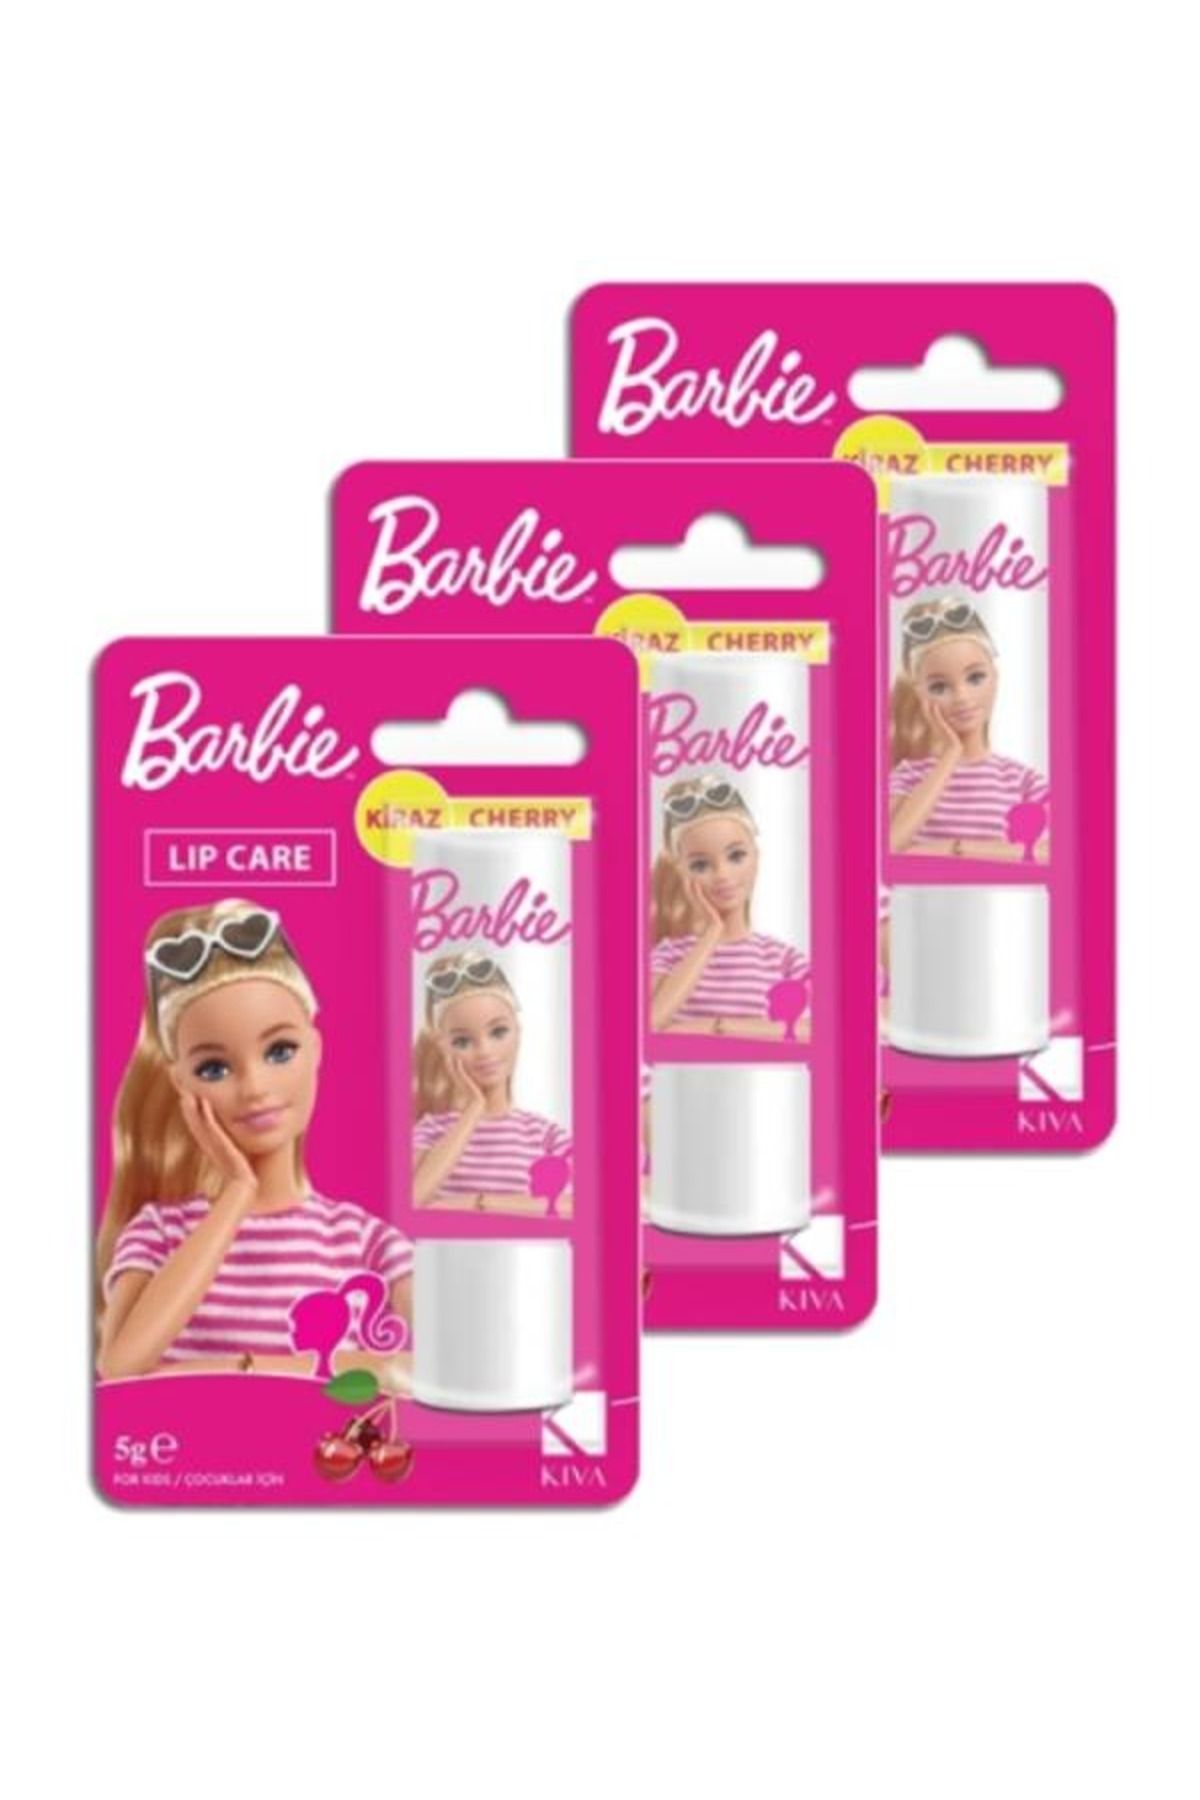 Kiva Barbie Kiraz Aromalı Dudak Koruyucu Lipcare 5 Gr (3 Adet)